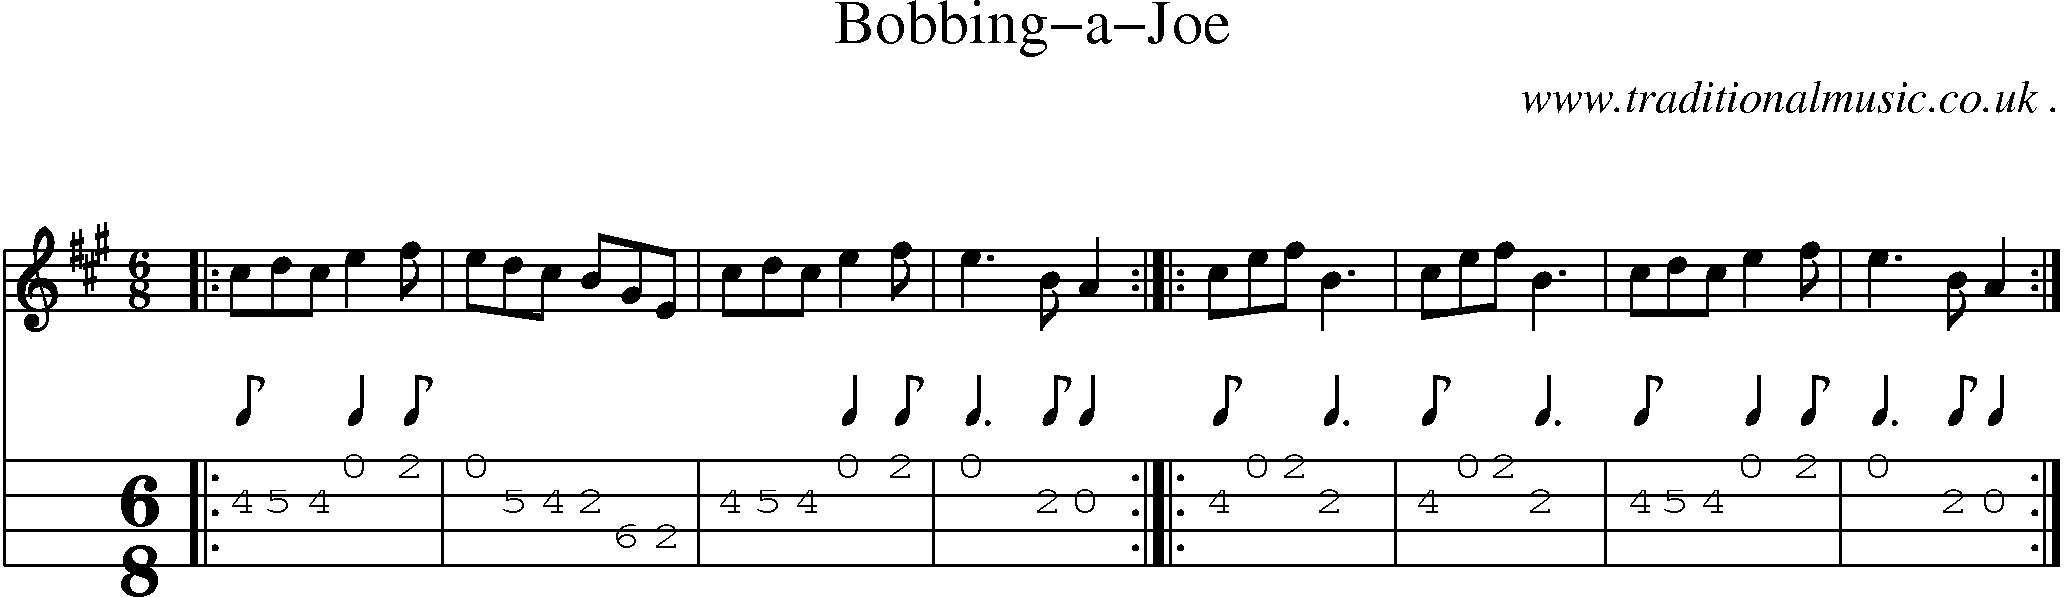 Sheet-Music and Mandolin Tabs for Bobbing-a-joe